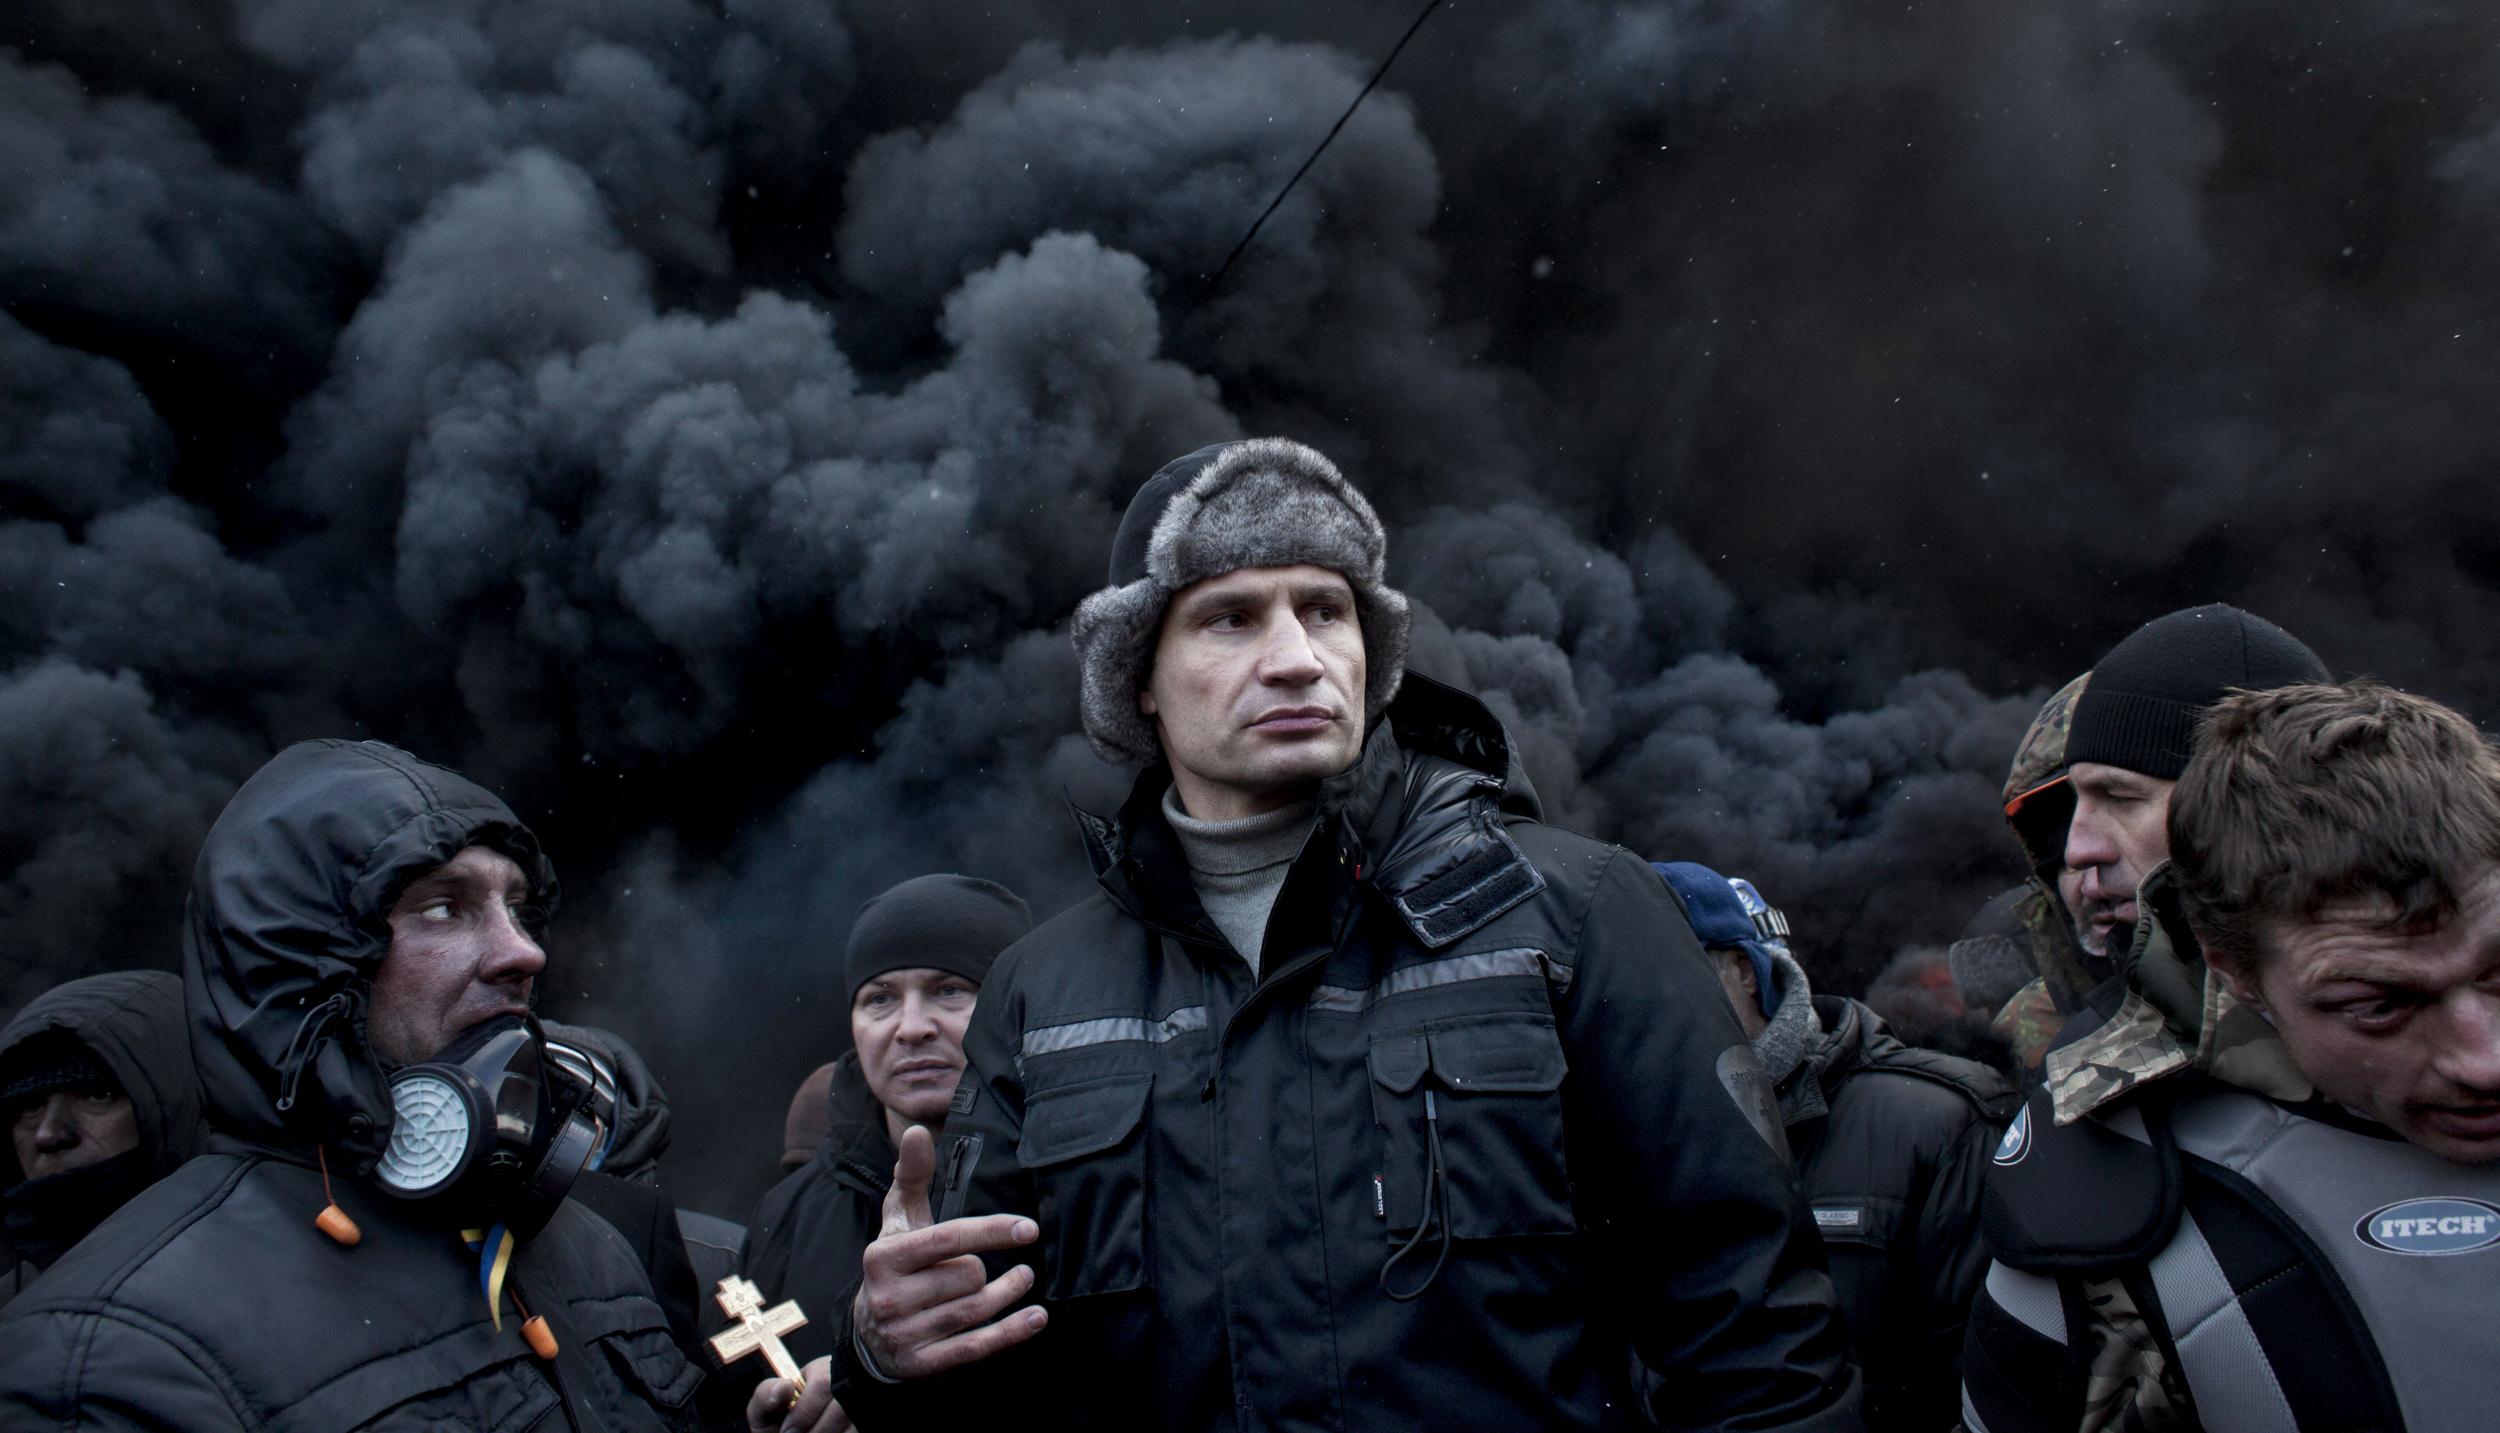 Dhjetëra të plagosur në Kiev – Klitschko jep detaje